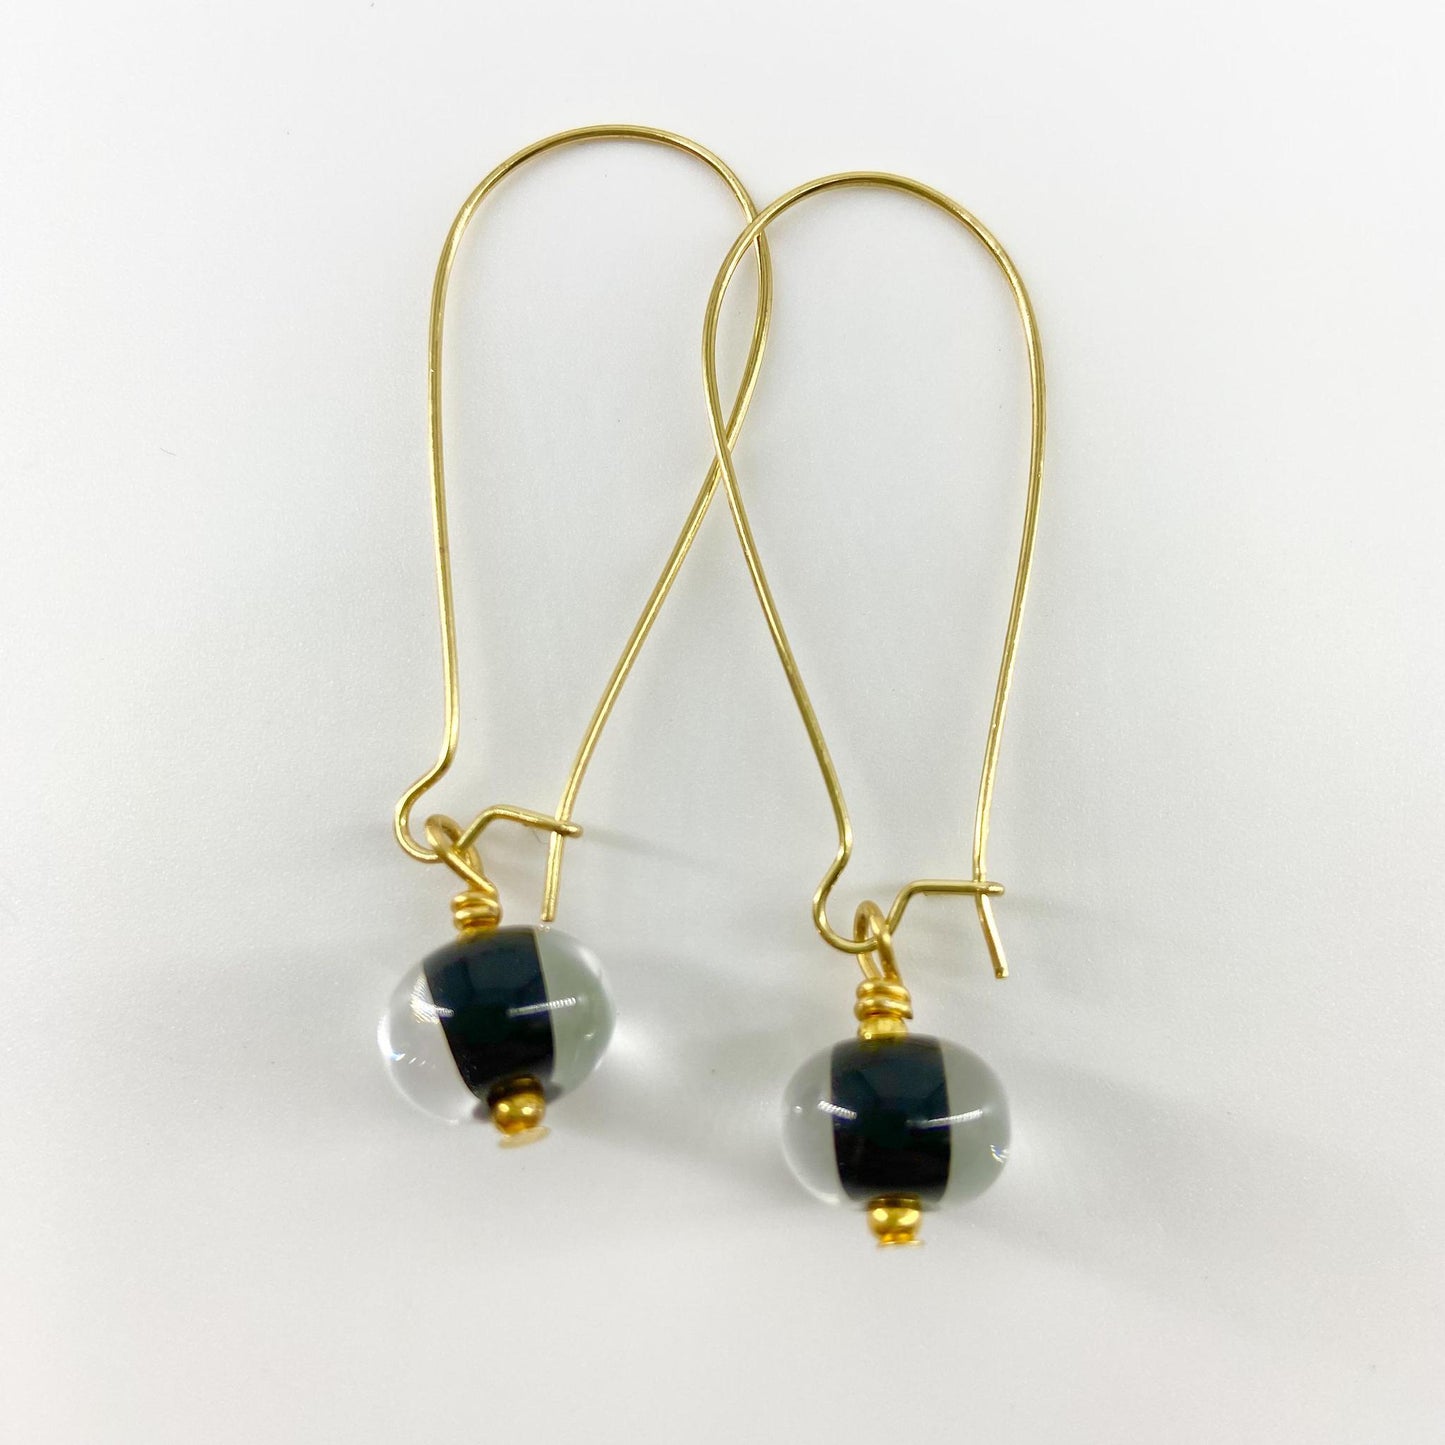 Earrings - Encased Black - Glass & Goldfill Long Wire (Video)